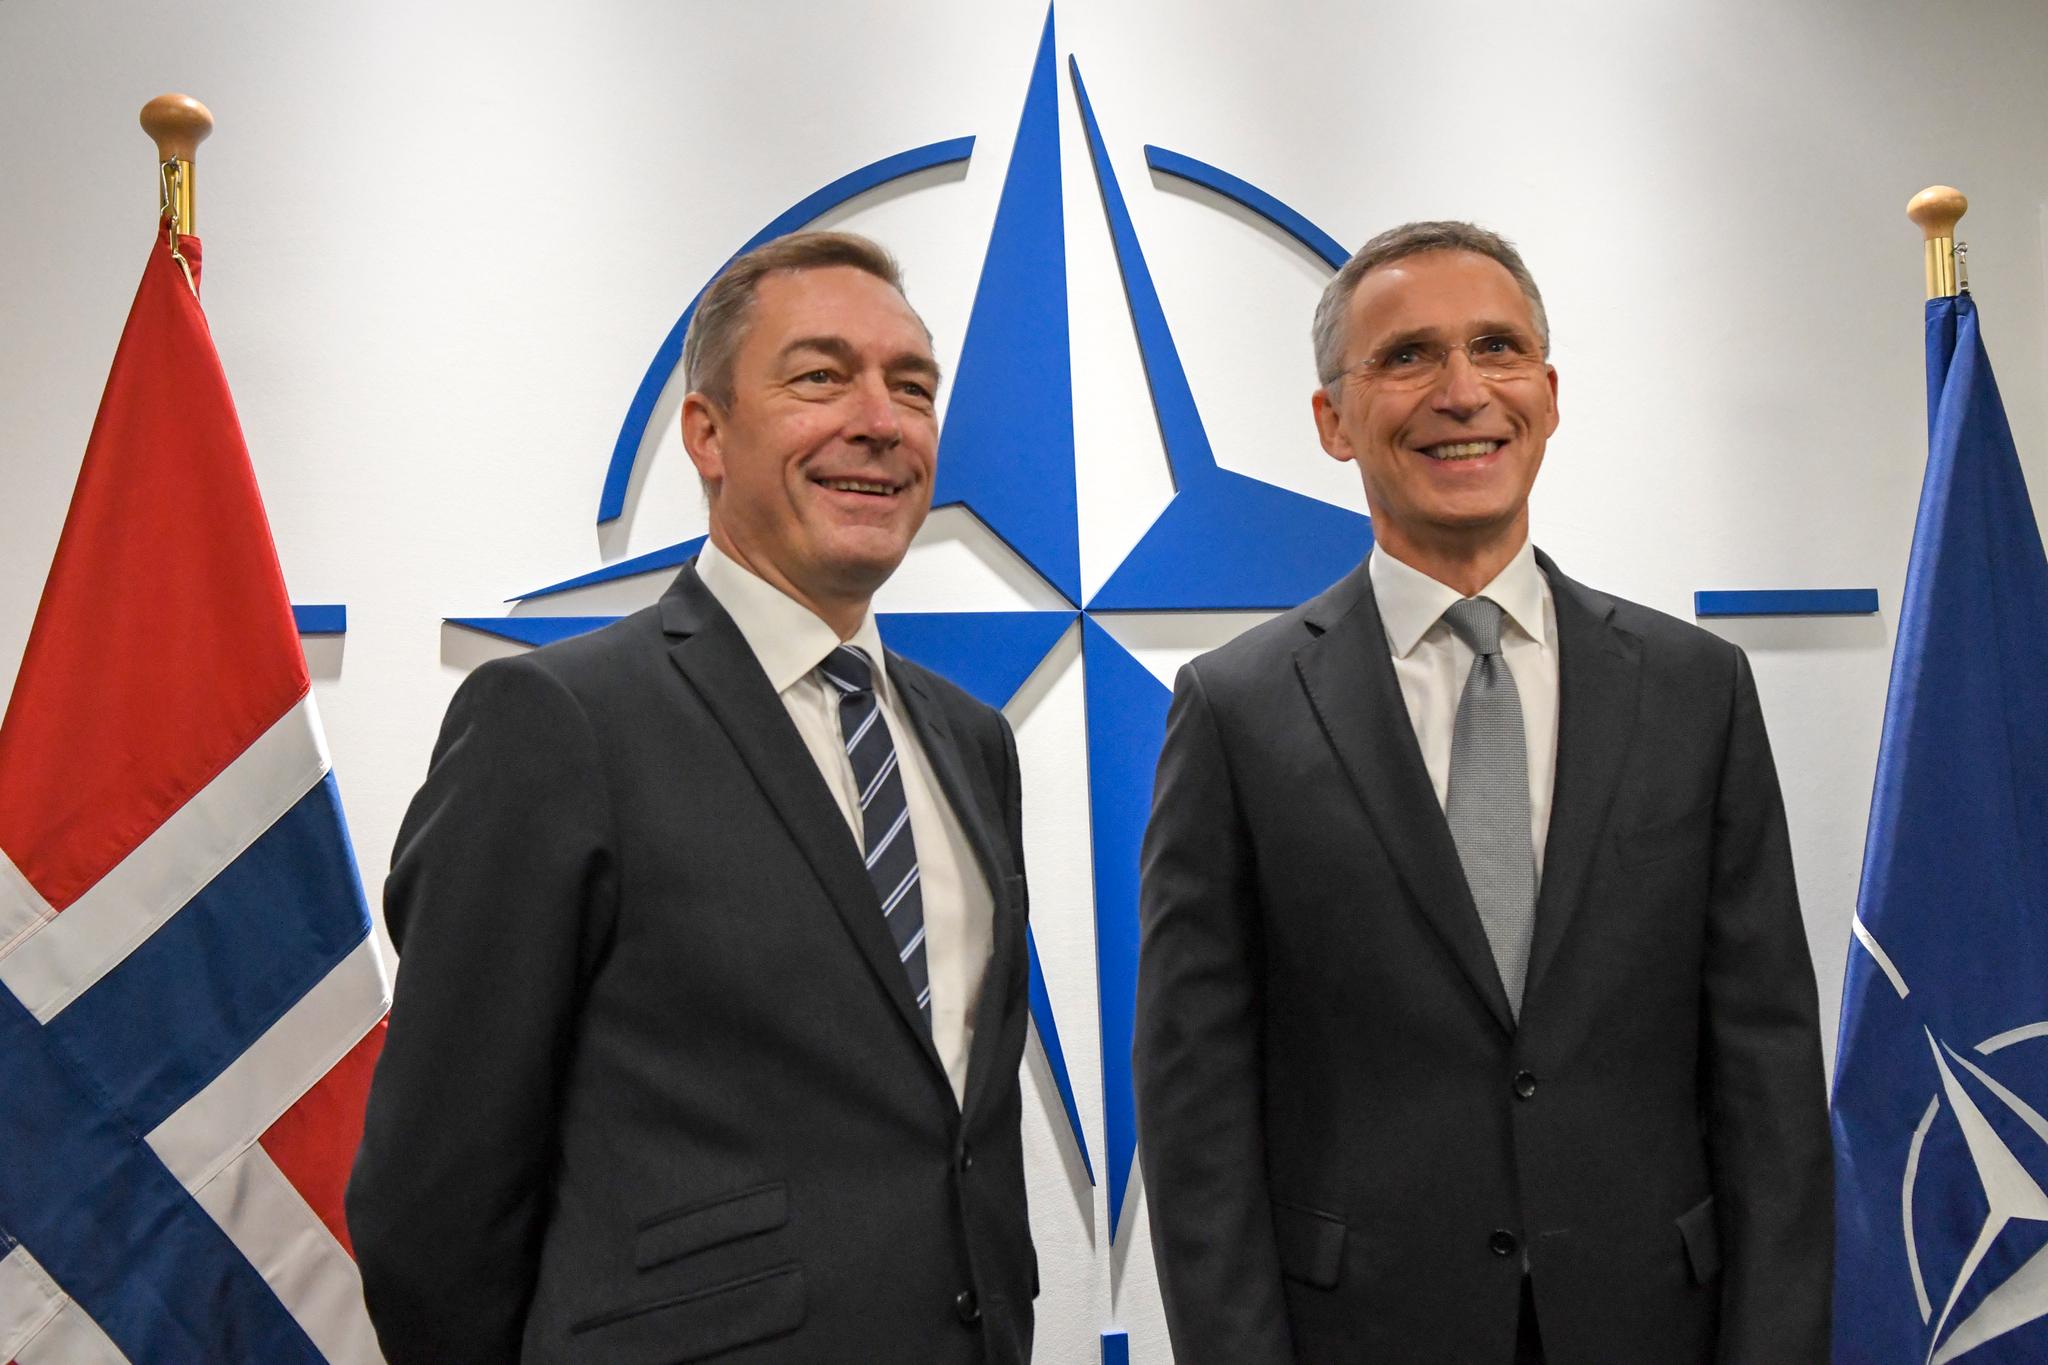  Forsvarsminister Frank Bakke-Jensen hadde et bilateralt møte med NATOs generalsekretær Jens Stoltenberg i forkant av NATOs forsvarsministermøte i Brussel forrige uke. 